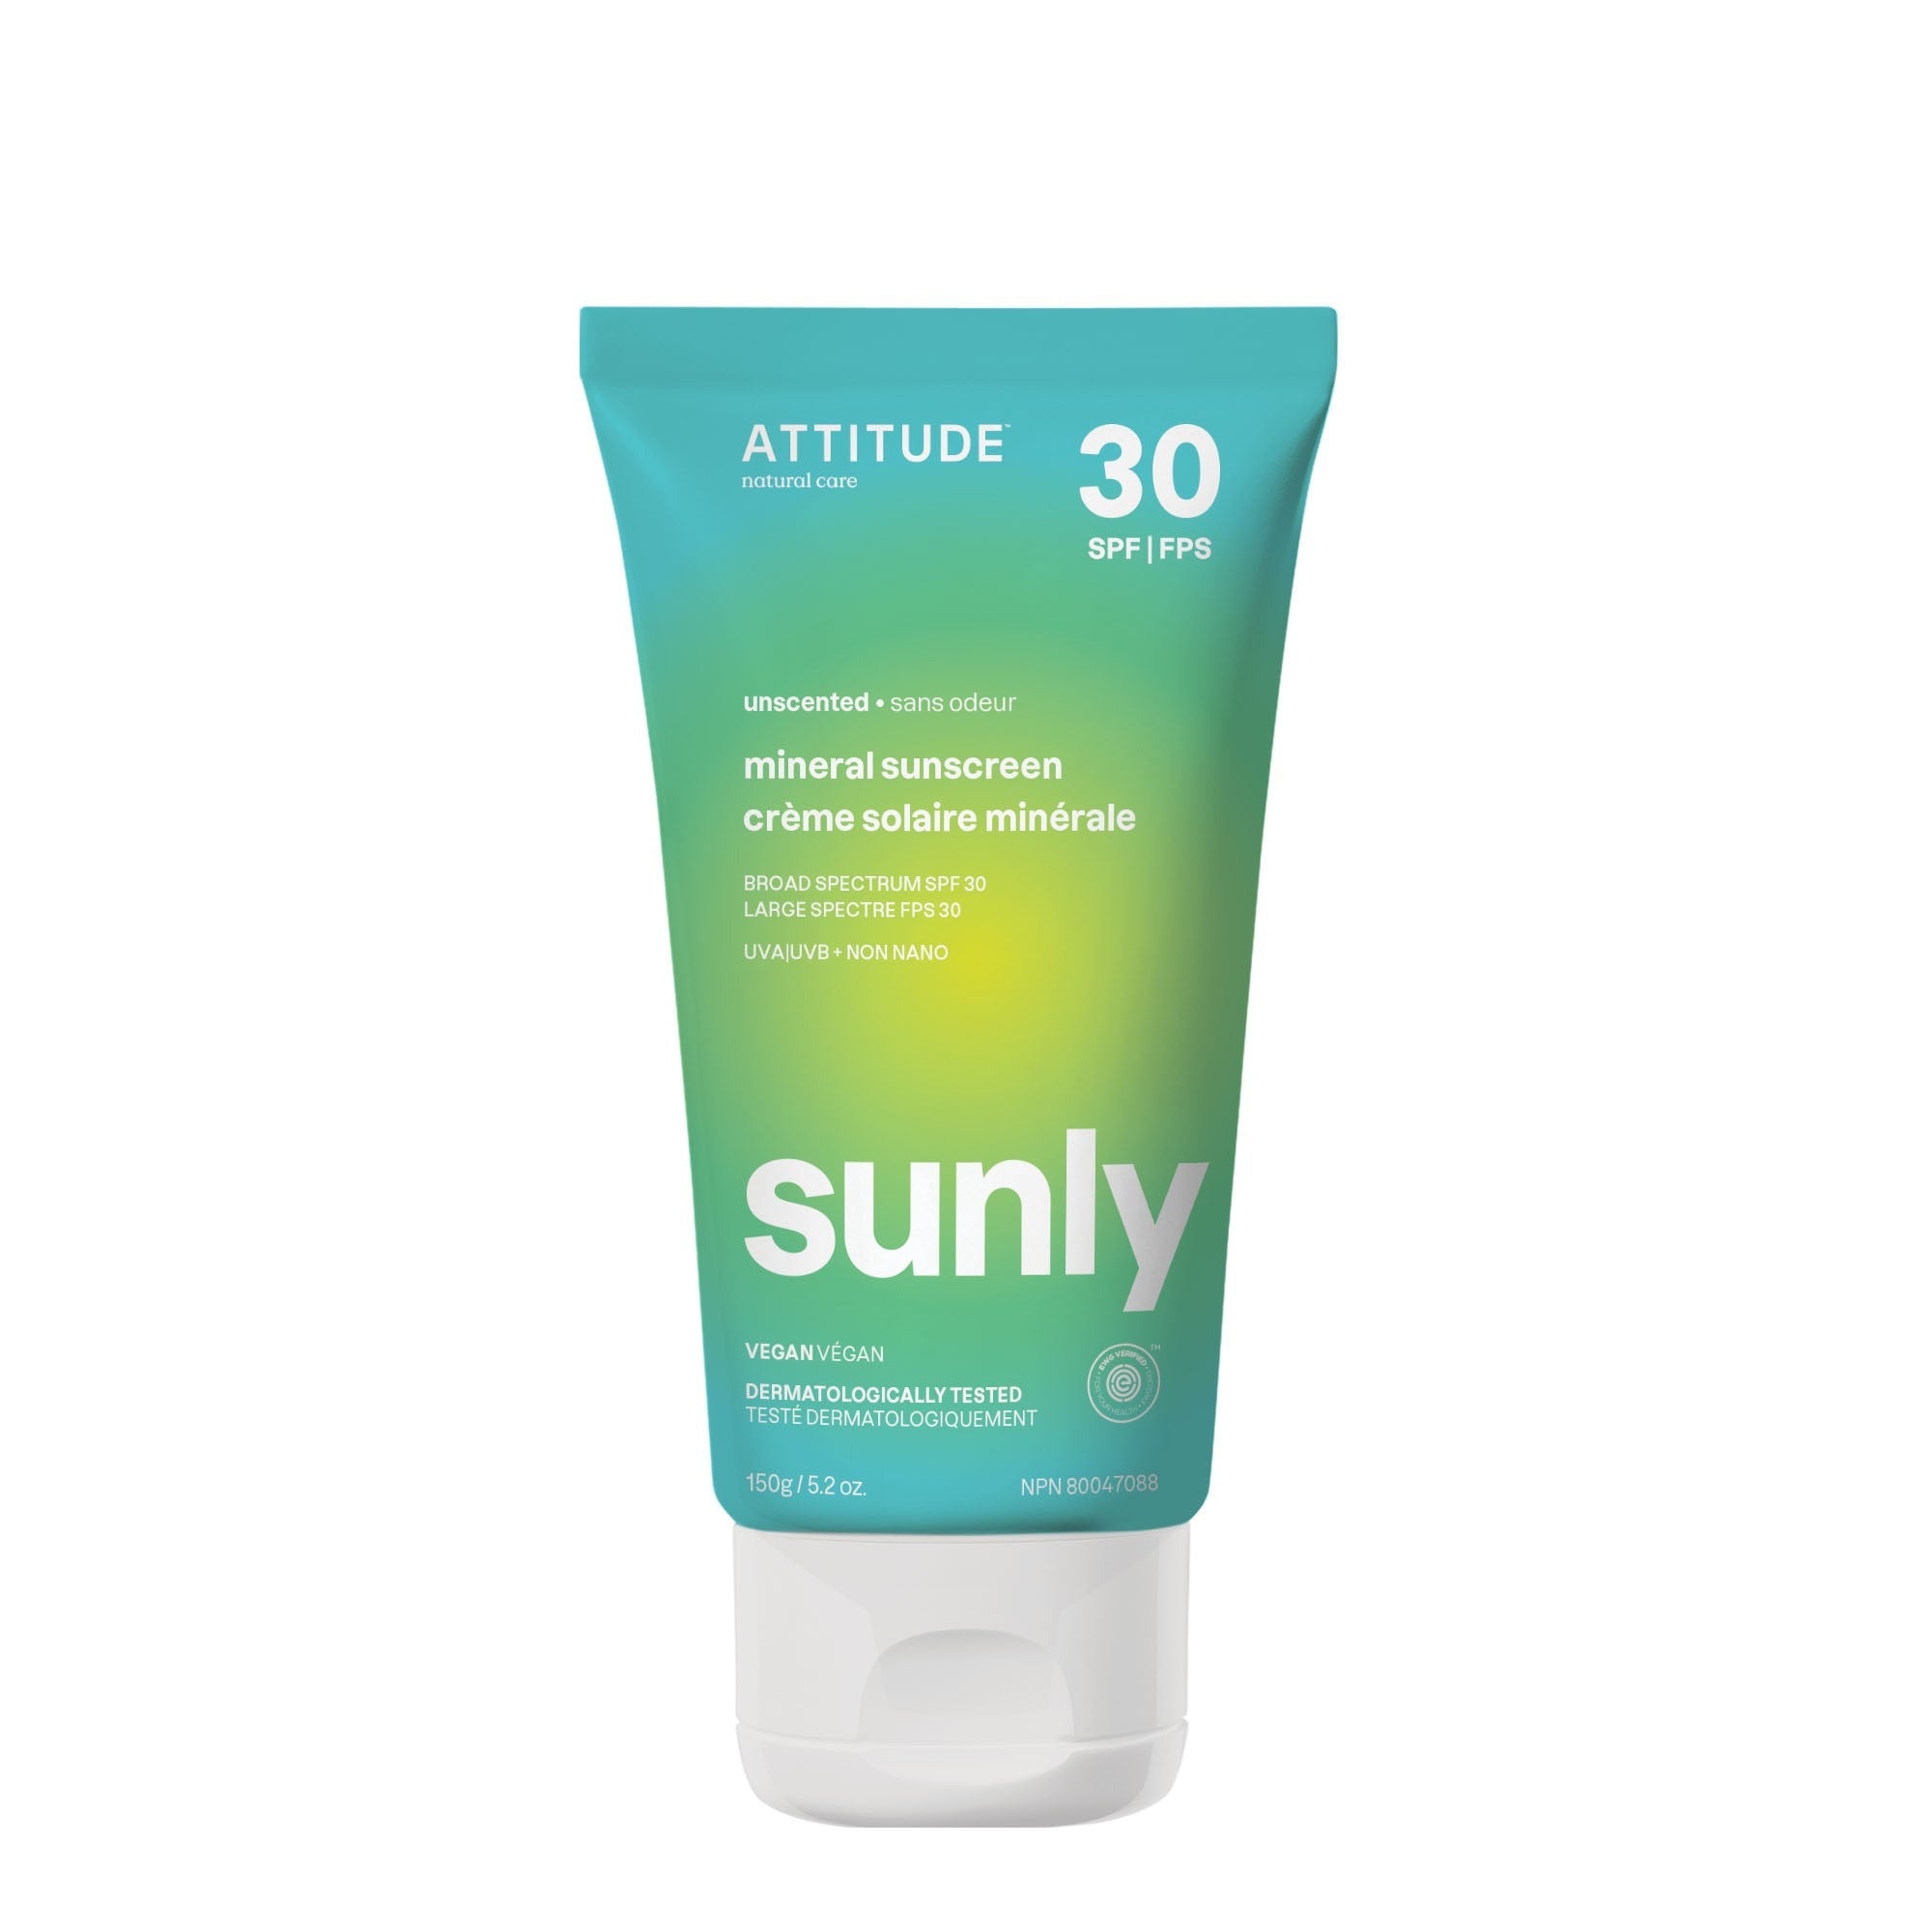 Crème solaire Attitude FPS 30 Sunly 150g